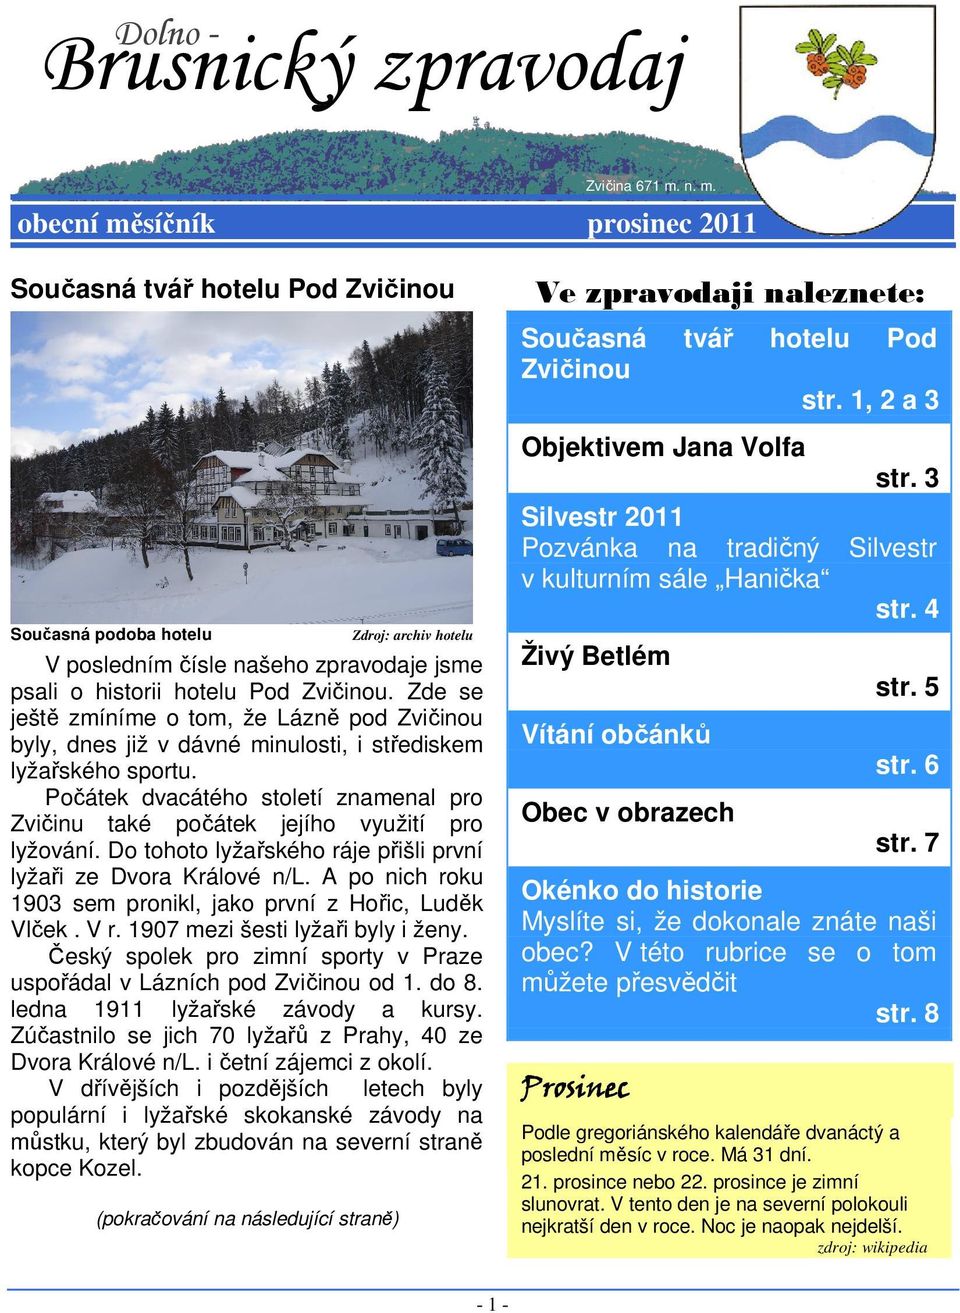 Zde se ještě zmíníme o tom, že Lázně pod Zvičinou byly, dnes již v dávné minulosti, i střediskem lyžařského sportu.